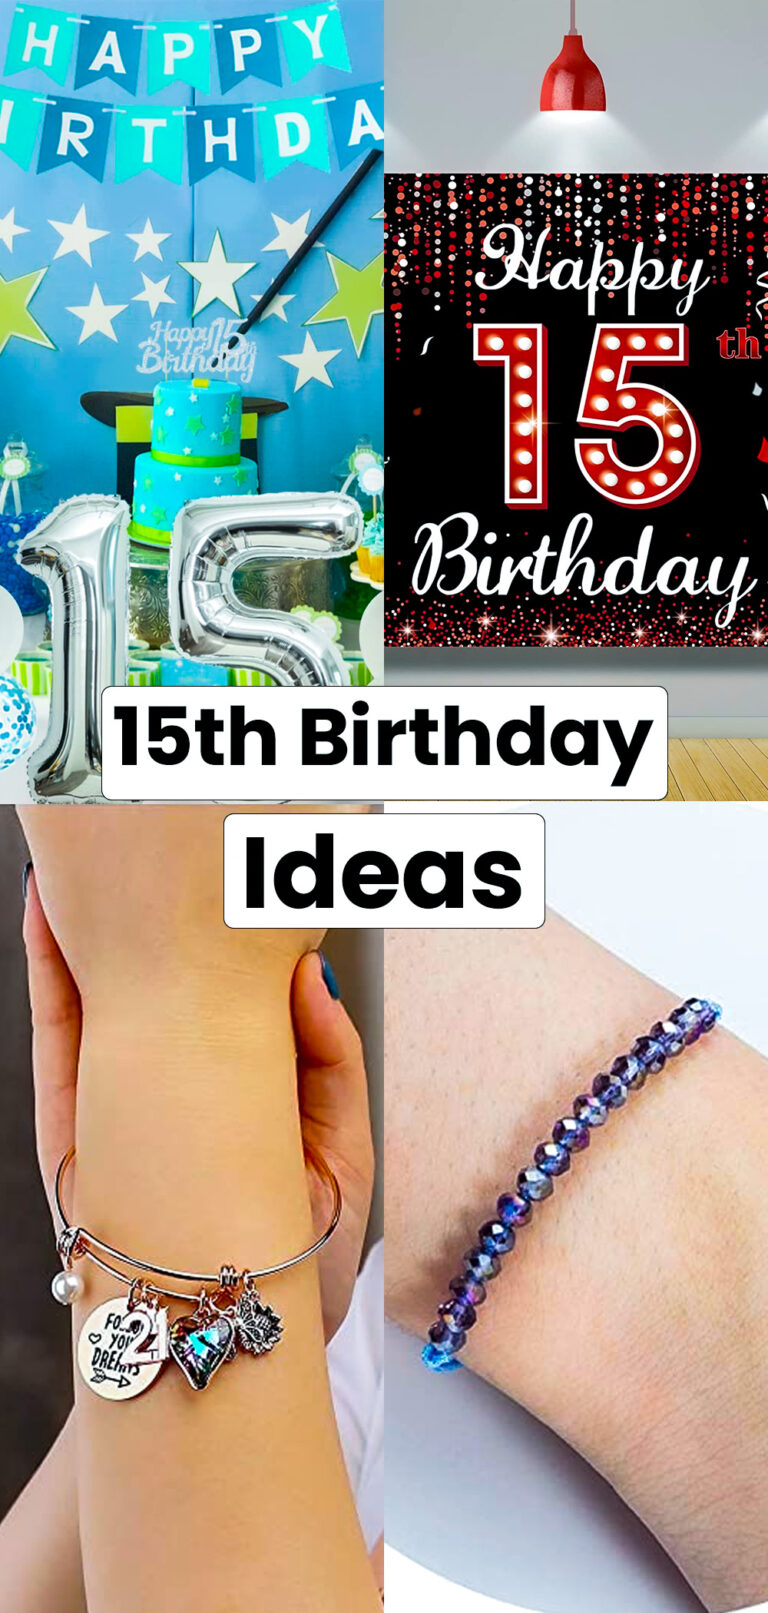 15th Birthday Ideas